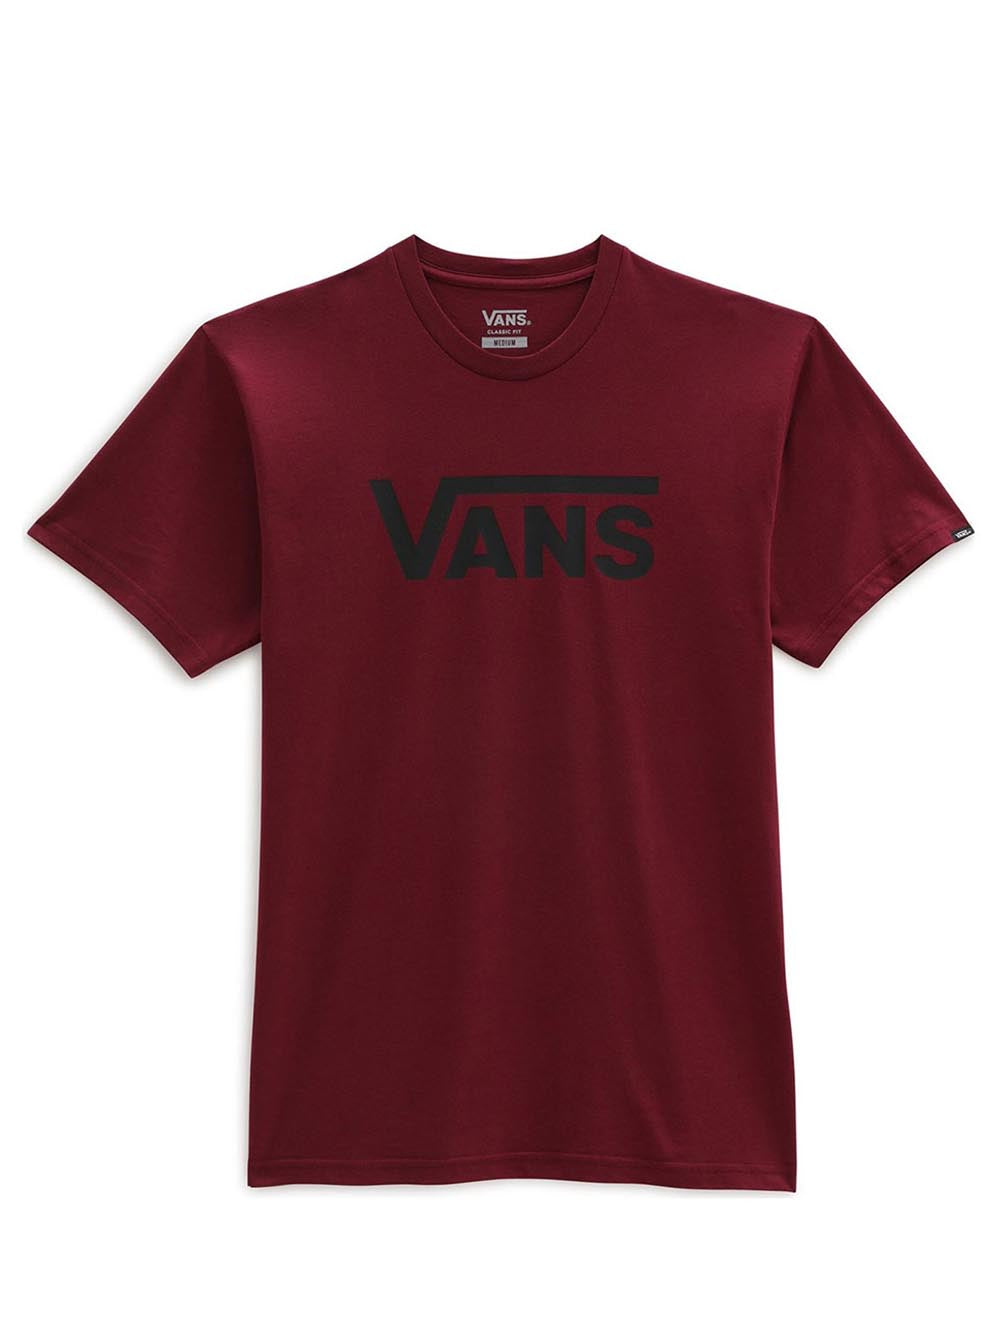 VANS T-shirt Uomo Bordeaux